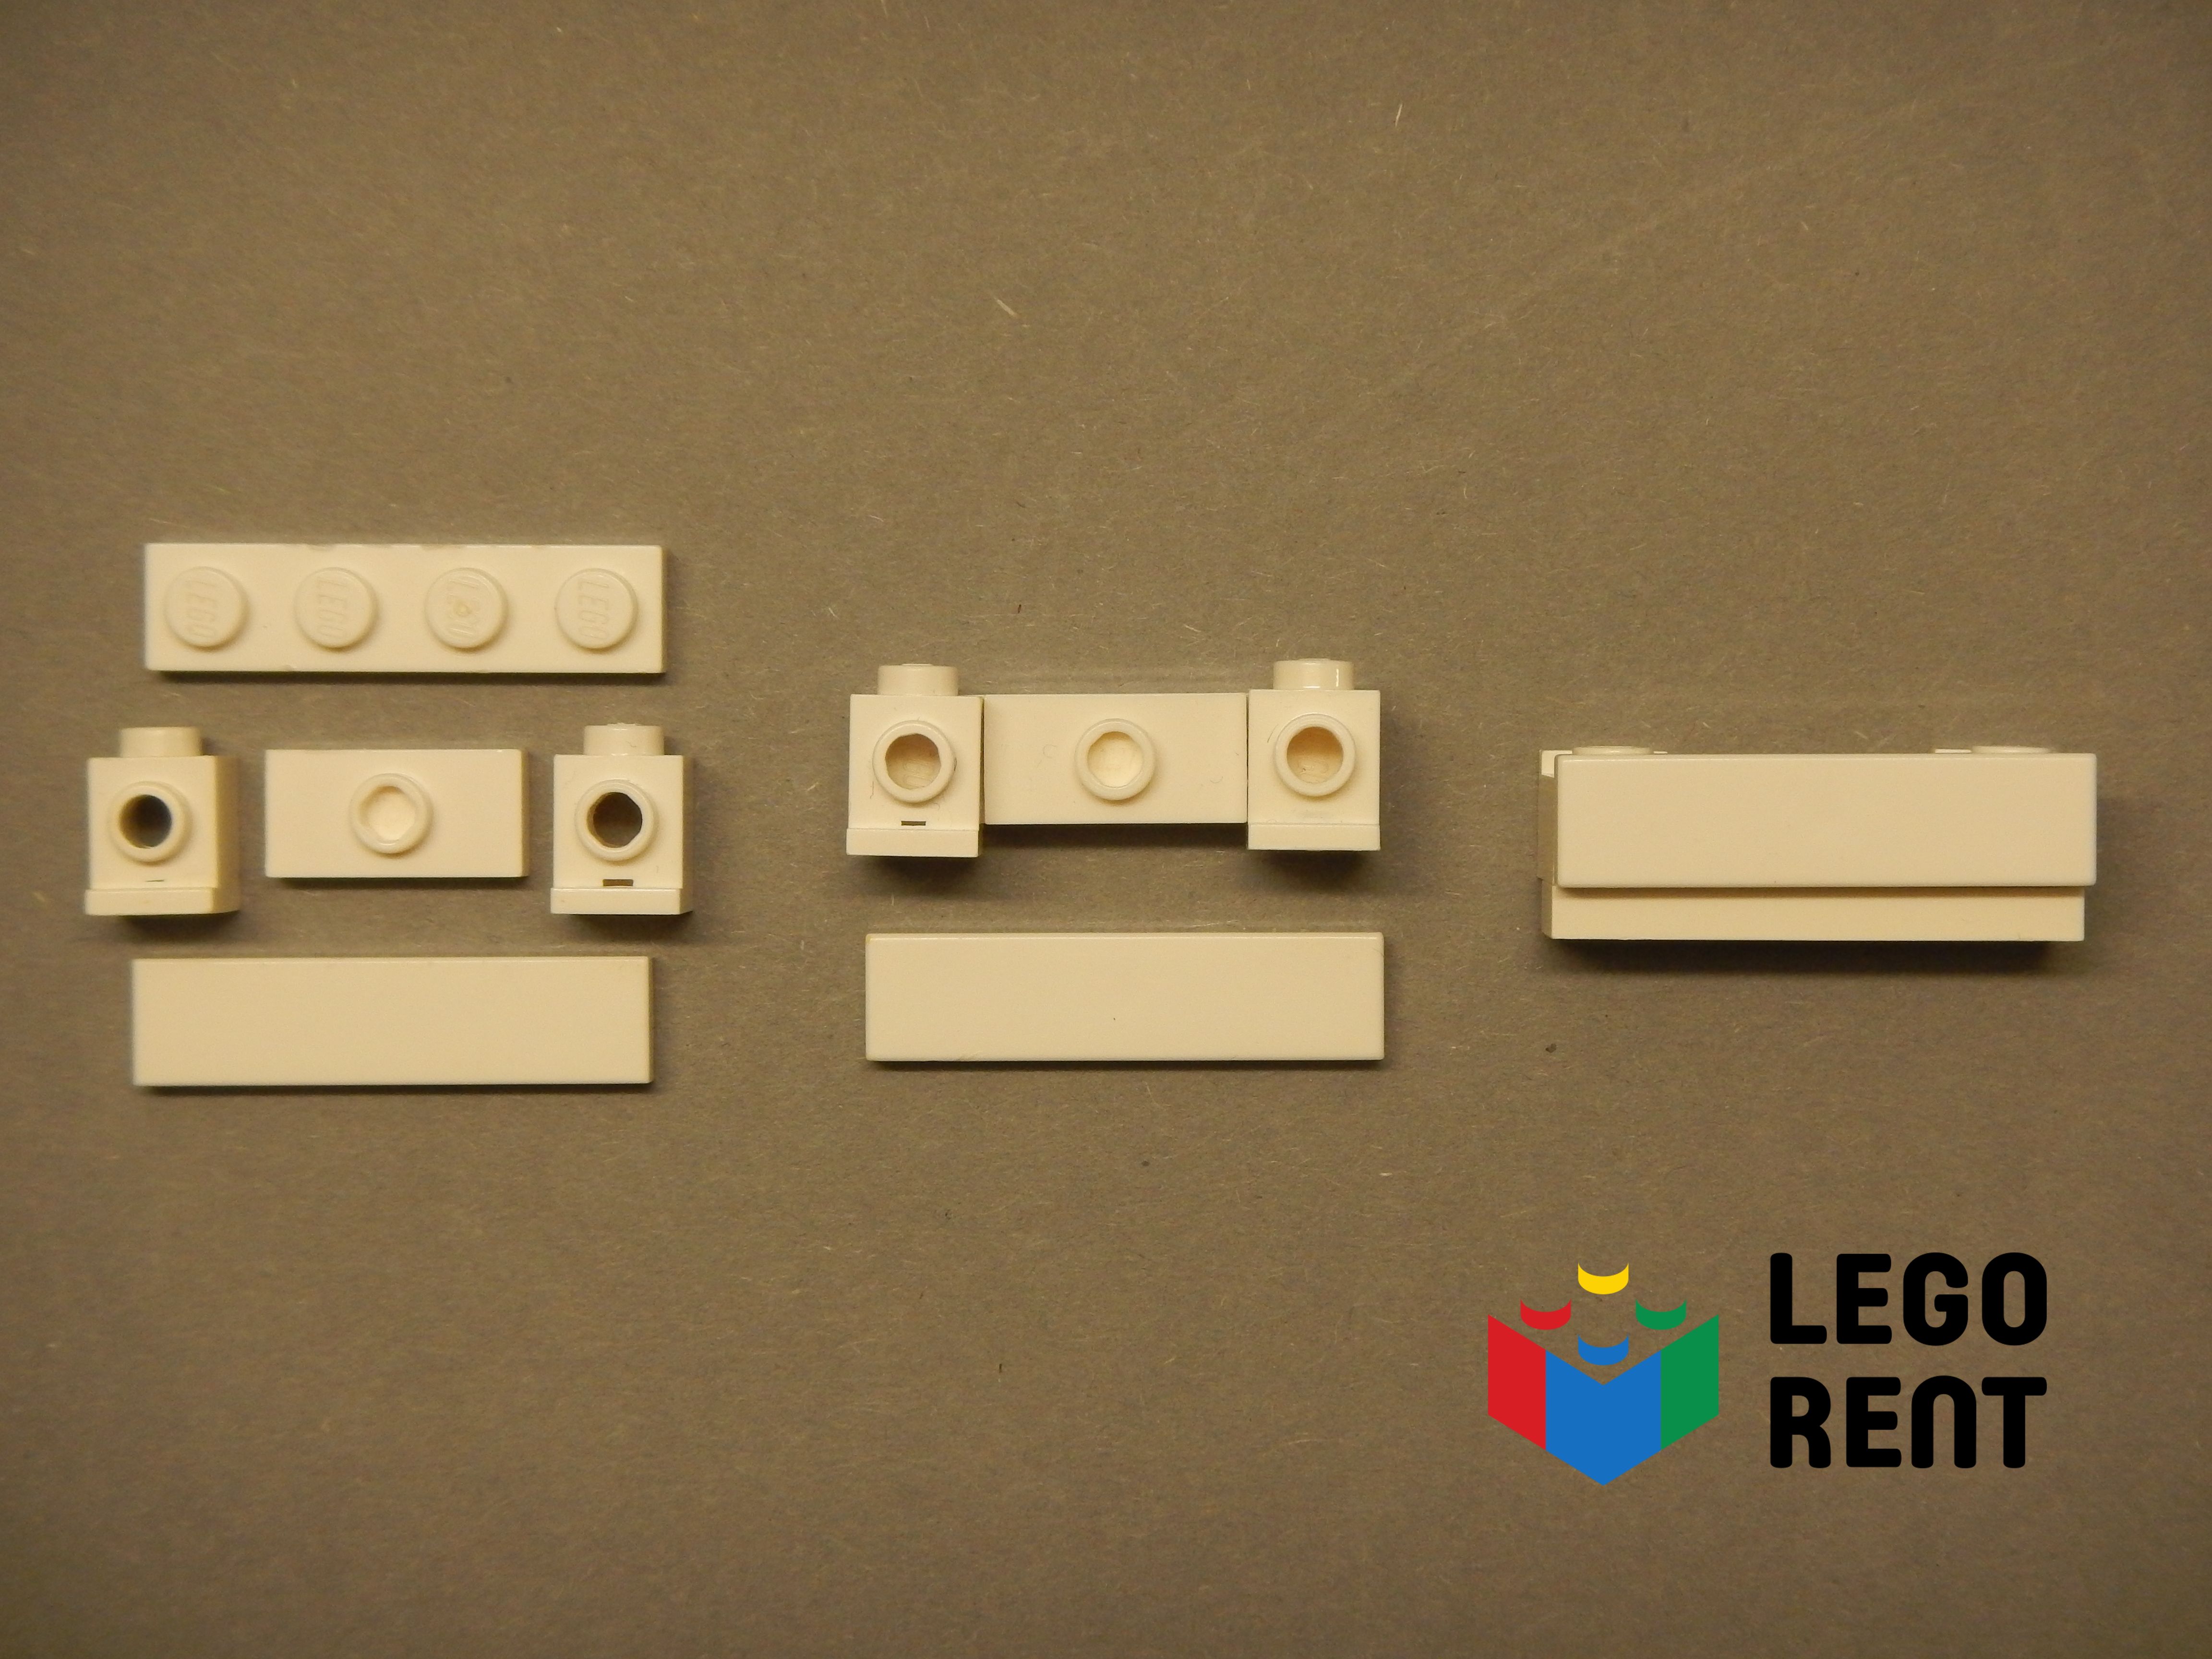 LEGO navody - ako postavit balkon